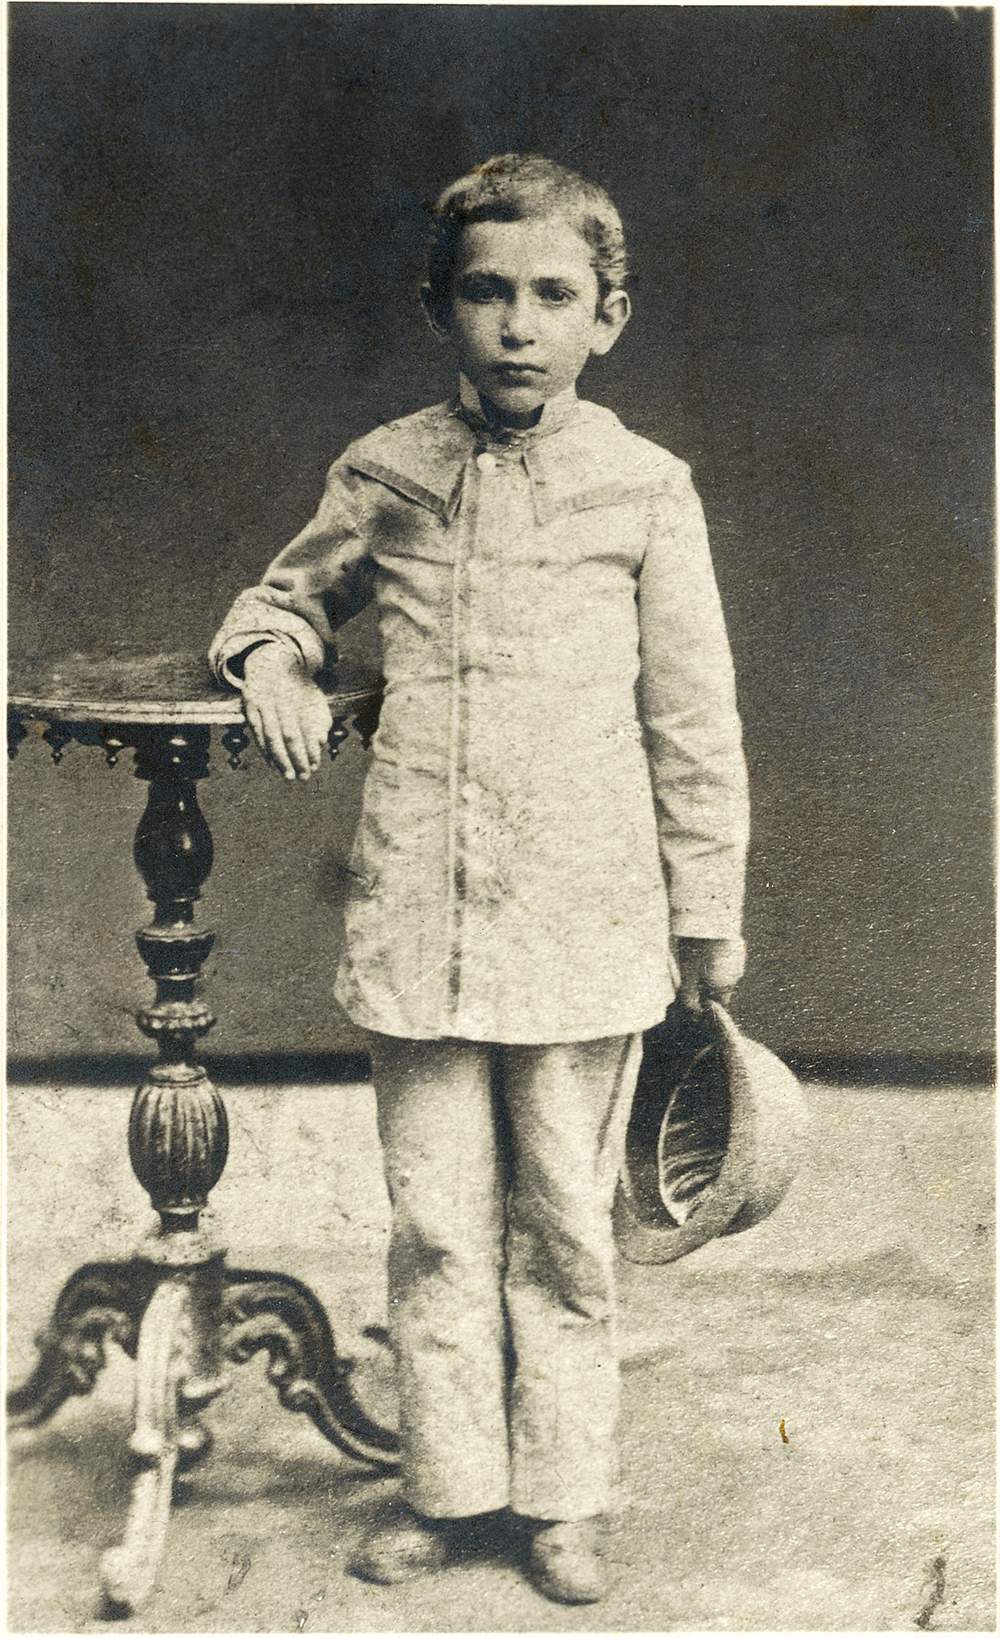 Chaim Weizmann as a child